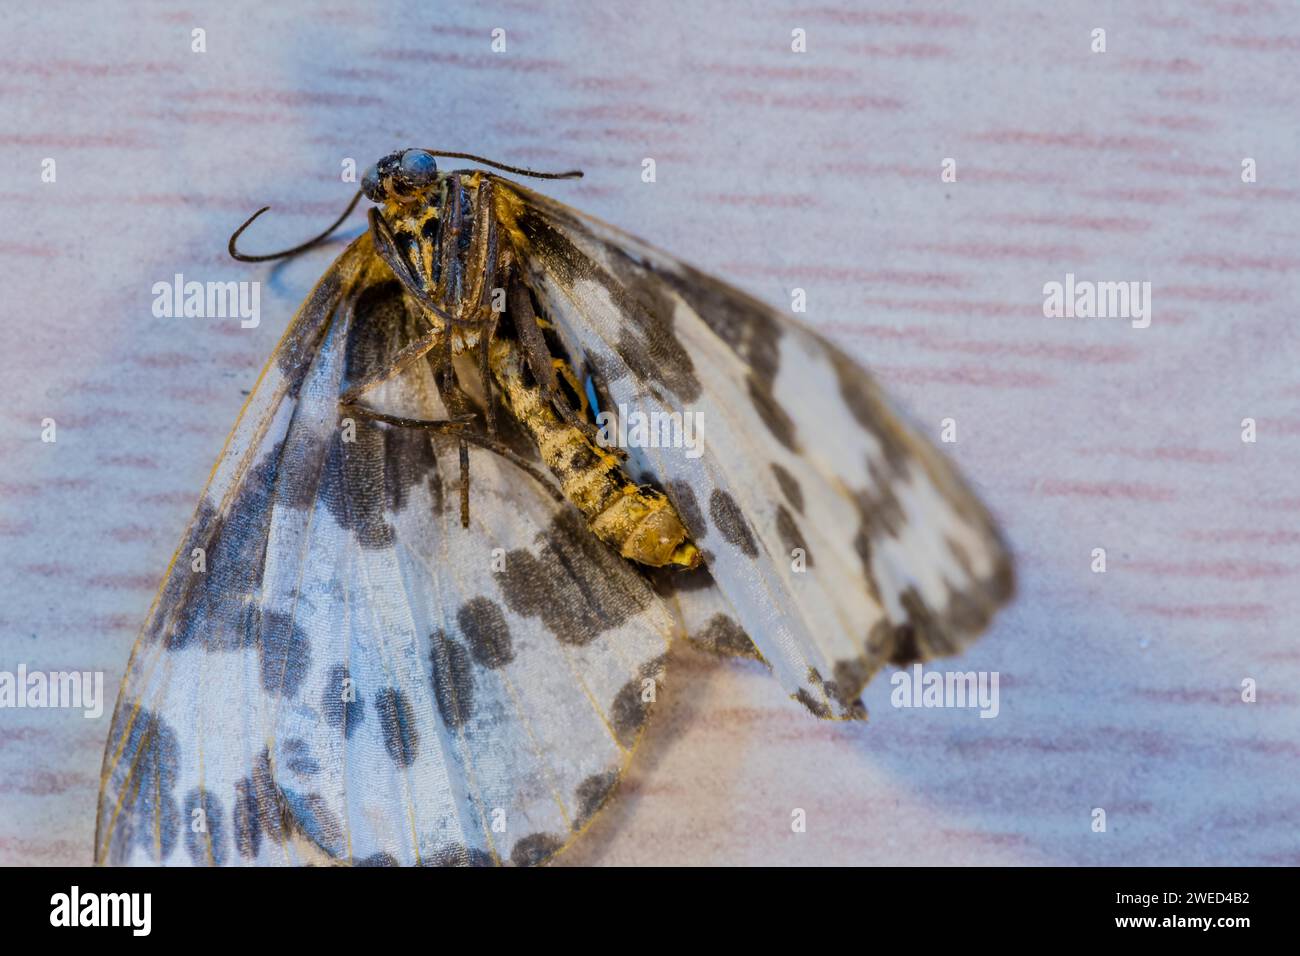 Primo piano di una falena morta con ali maculate bianche e marroni Foto Stock